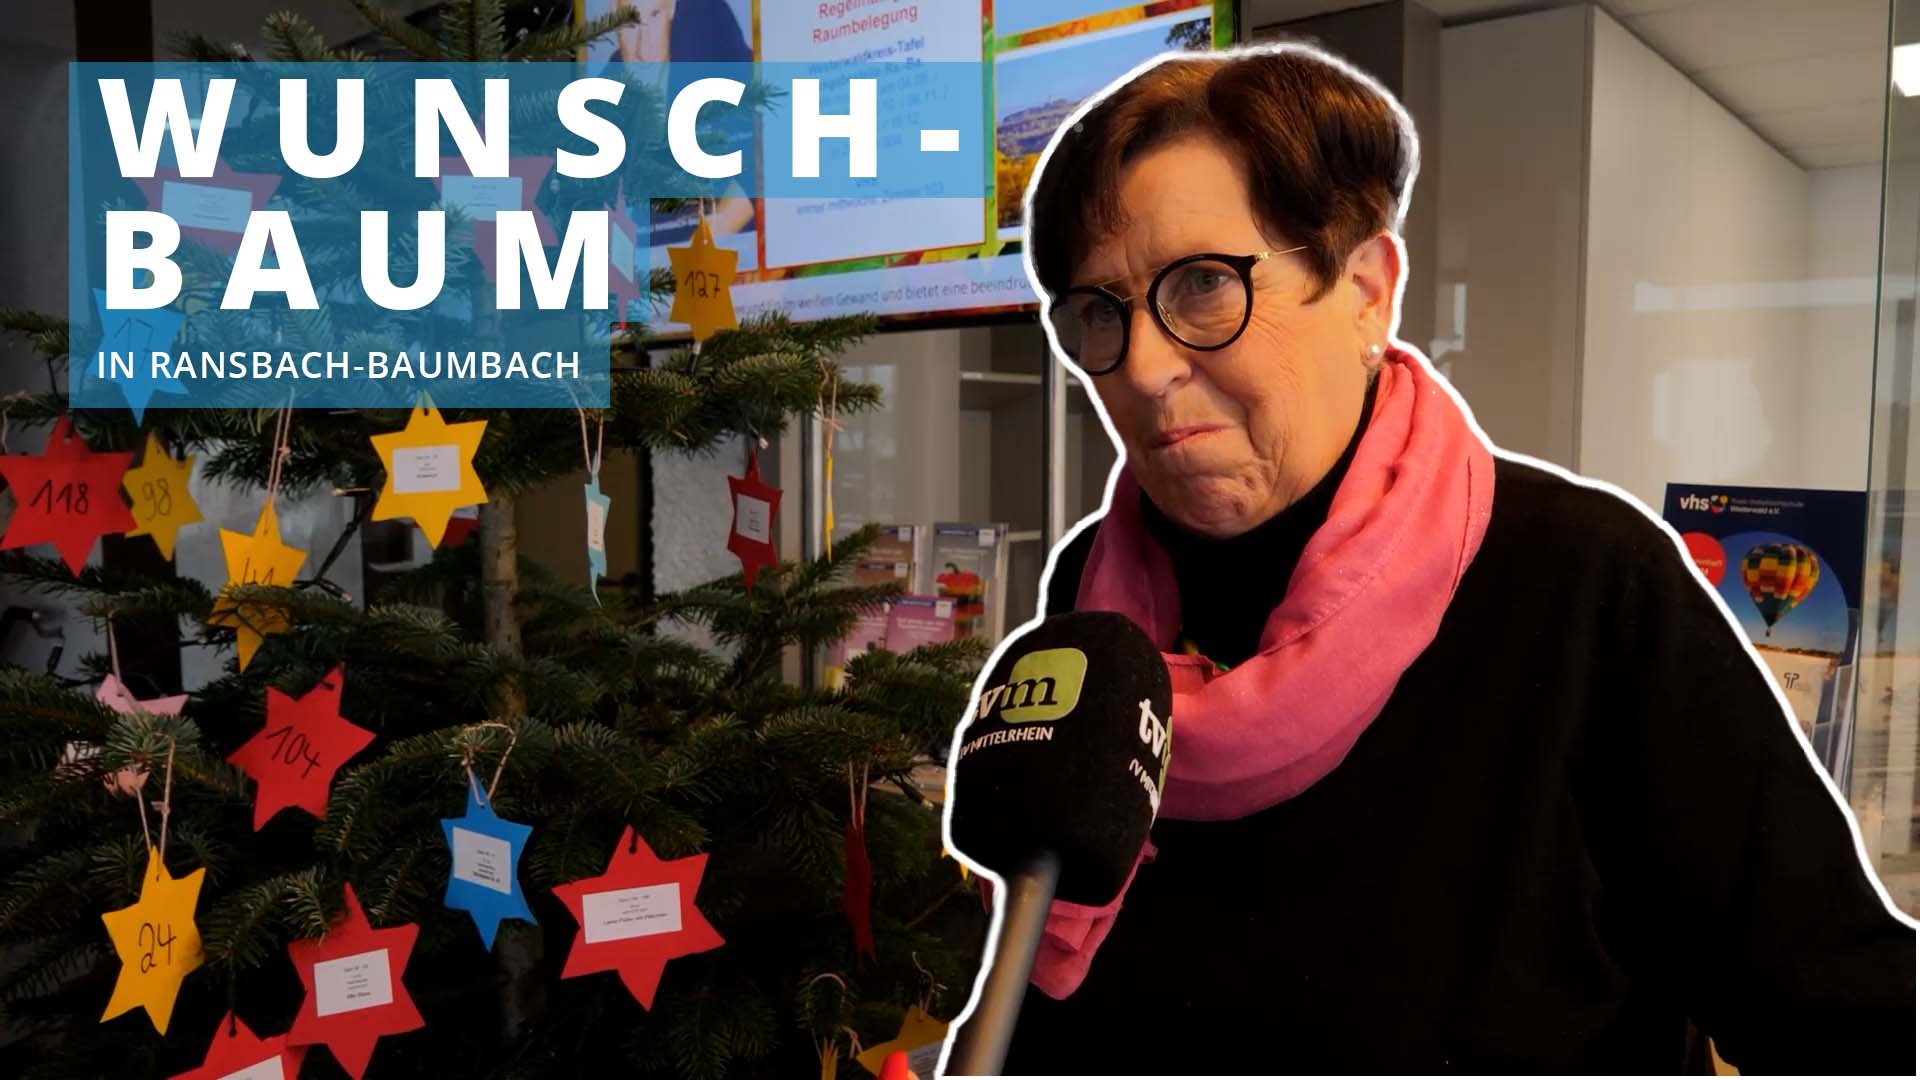 Wunschbaum in Ransbach-Baumbach lässt Weihnachtsträume von Bedürftigen wahr werden